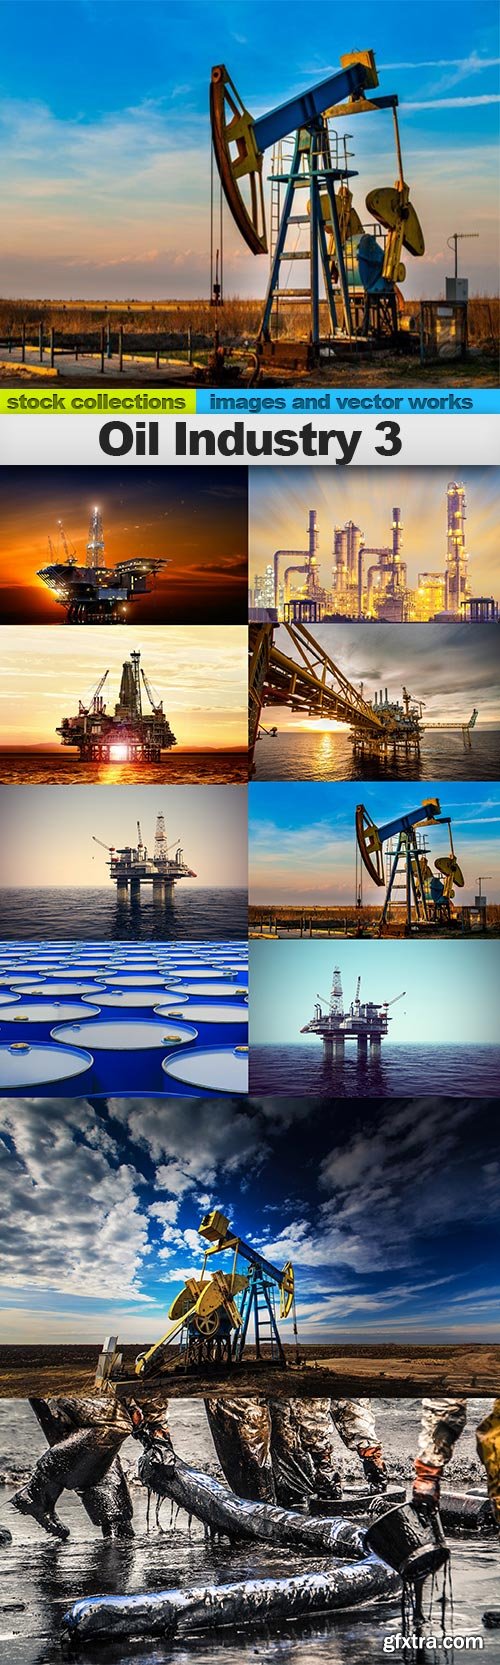 Oil Industry 3, 10 x UHQ JPEG